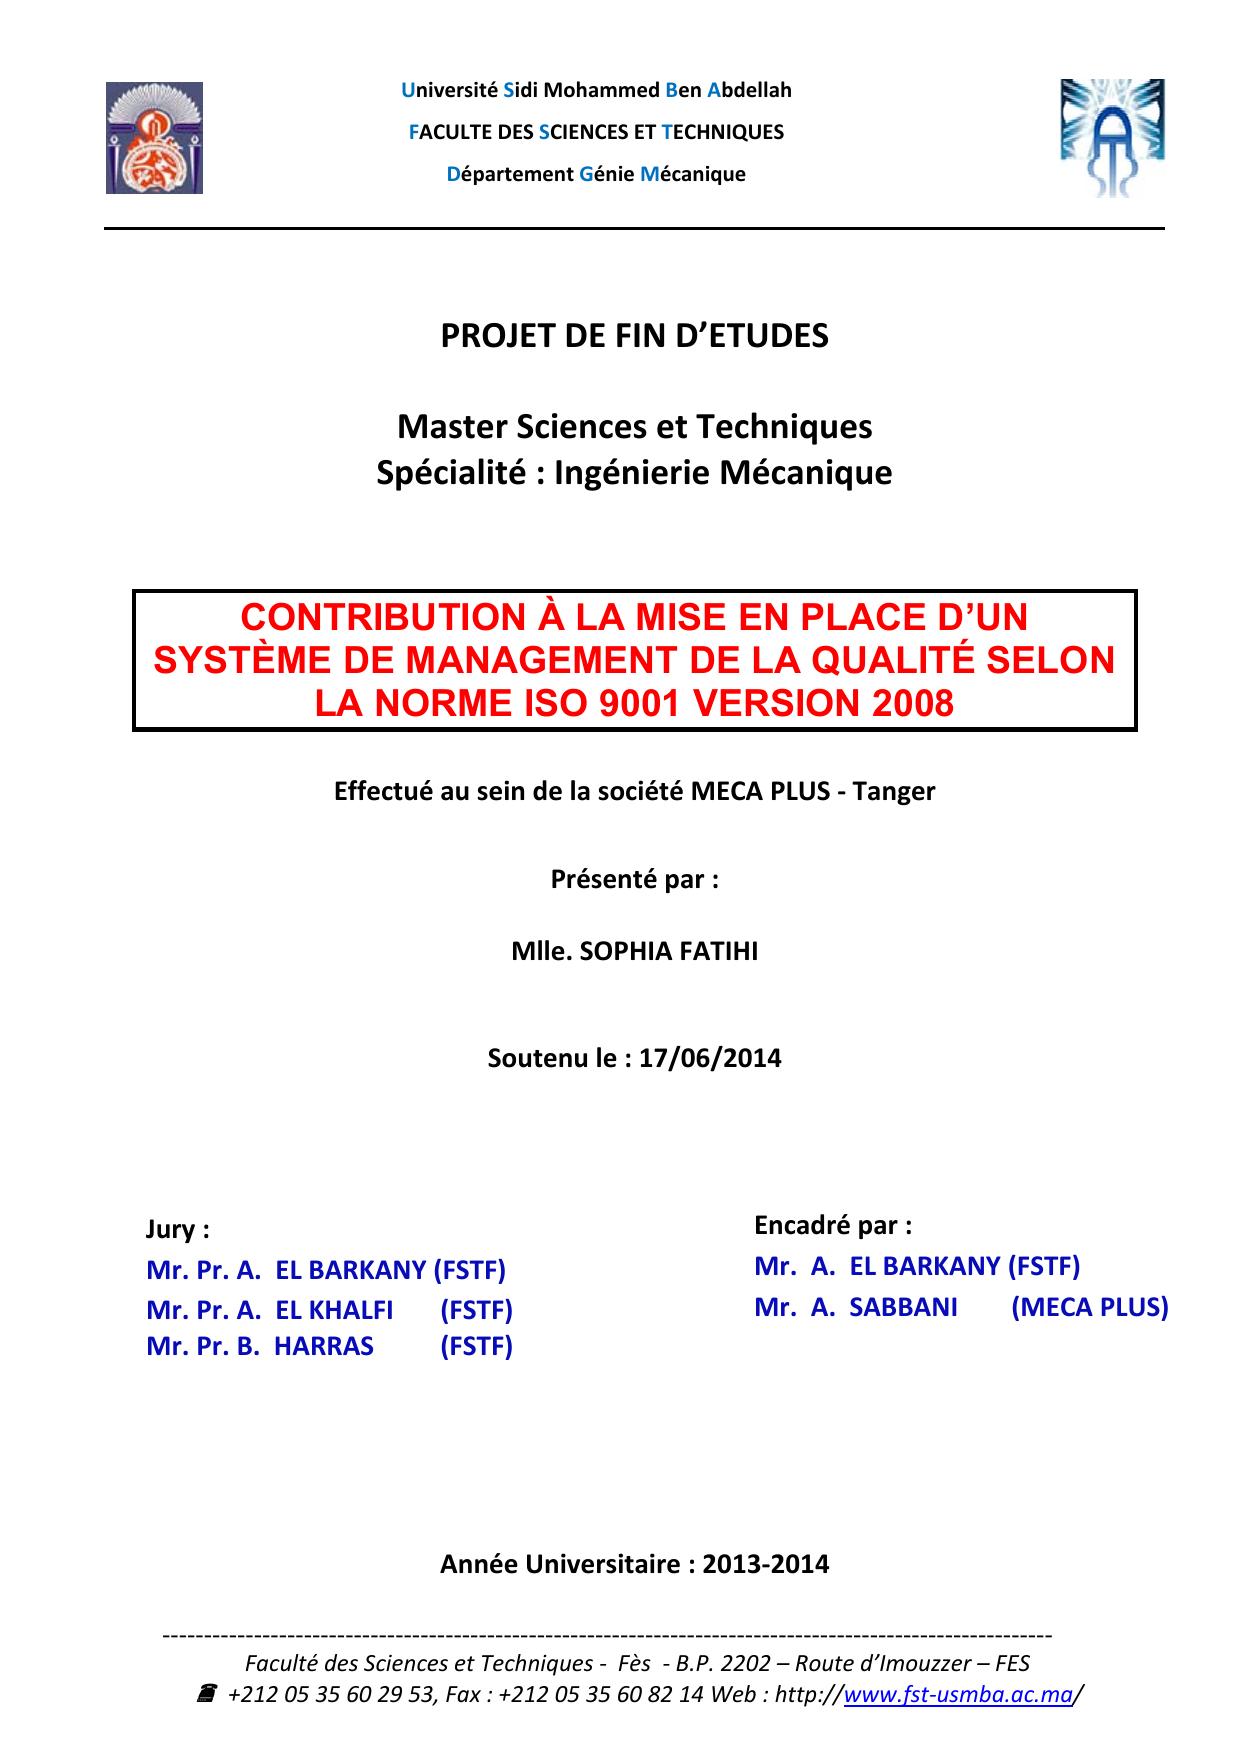 Contribution à la mise en place d'un système de management de la qualité selon la norme ISO9001 version 2008